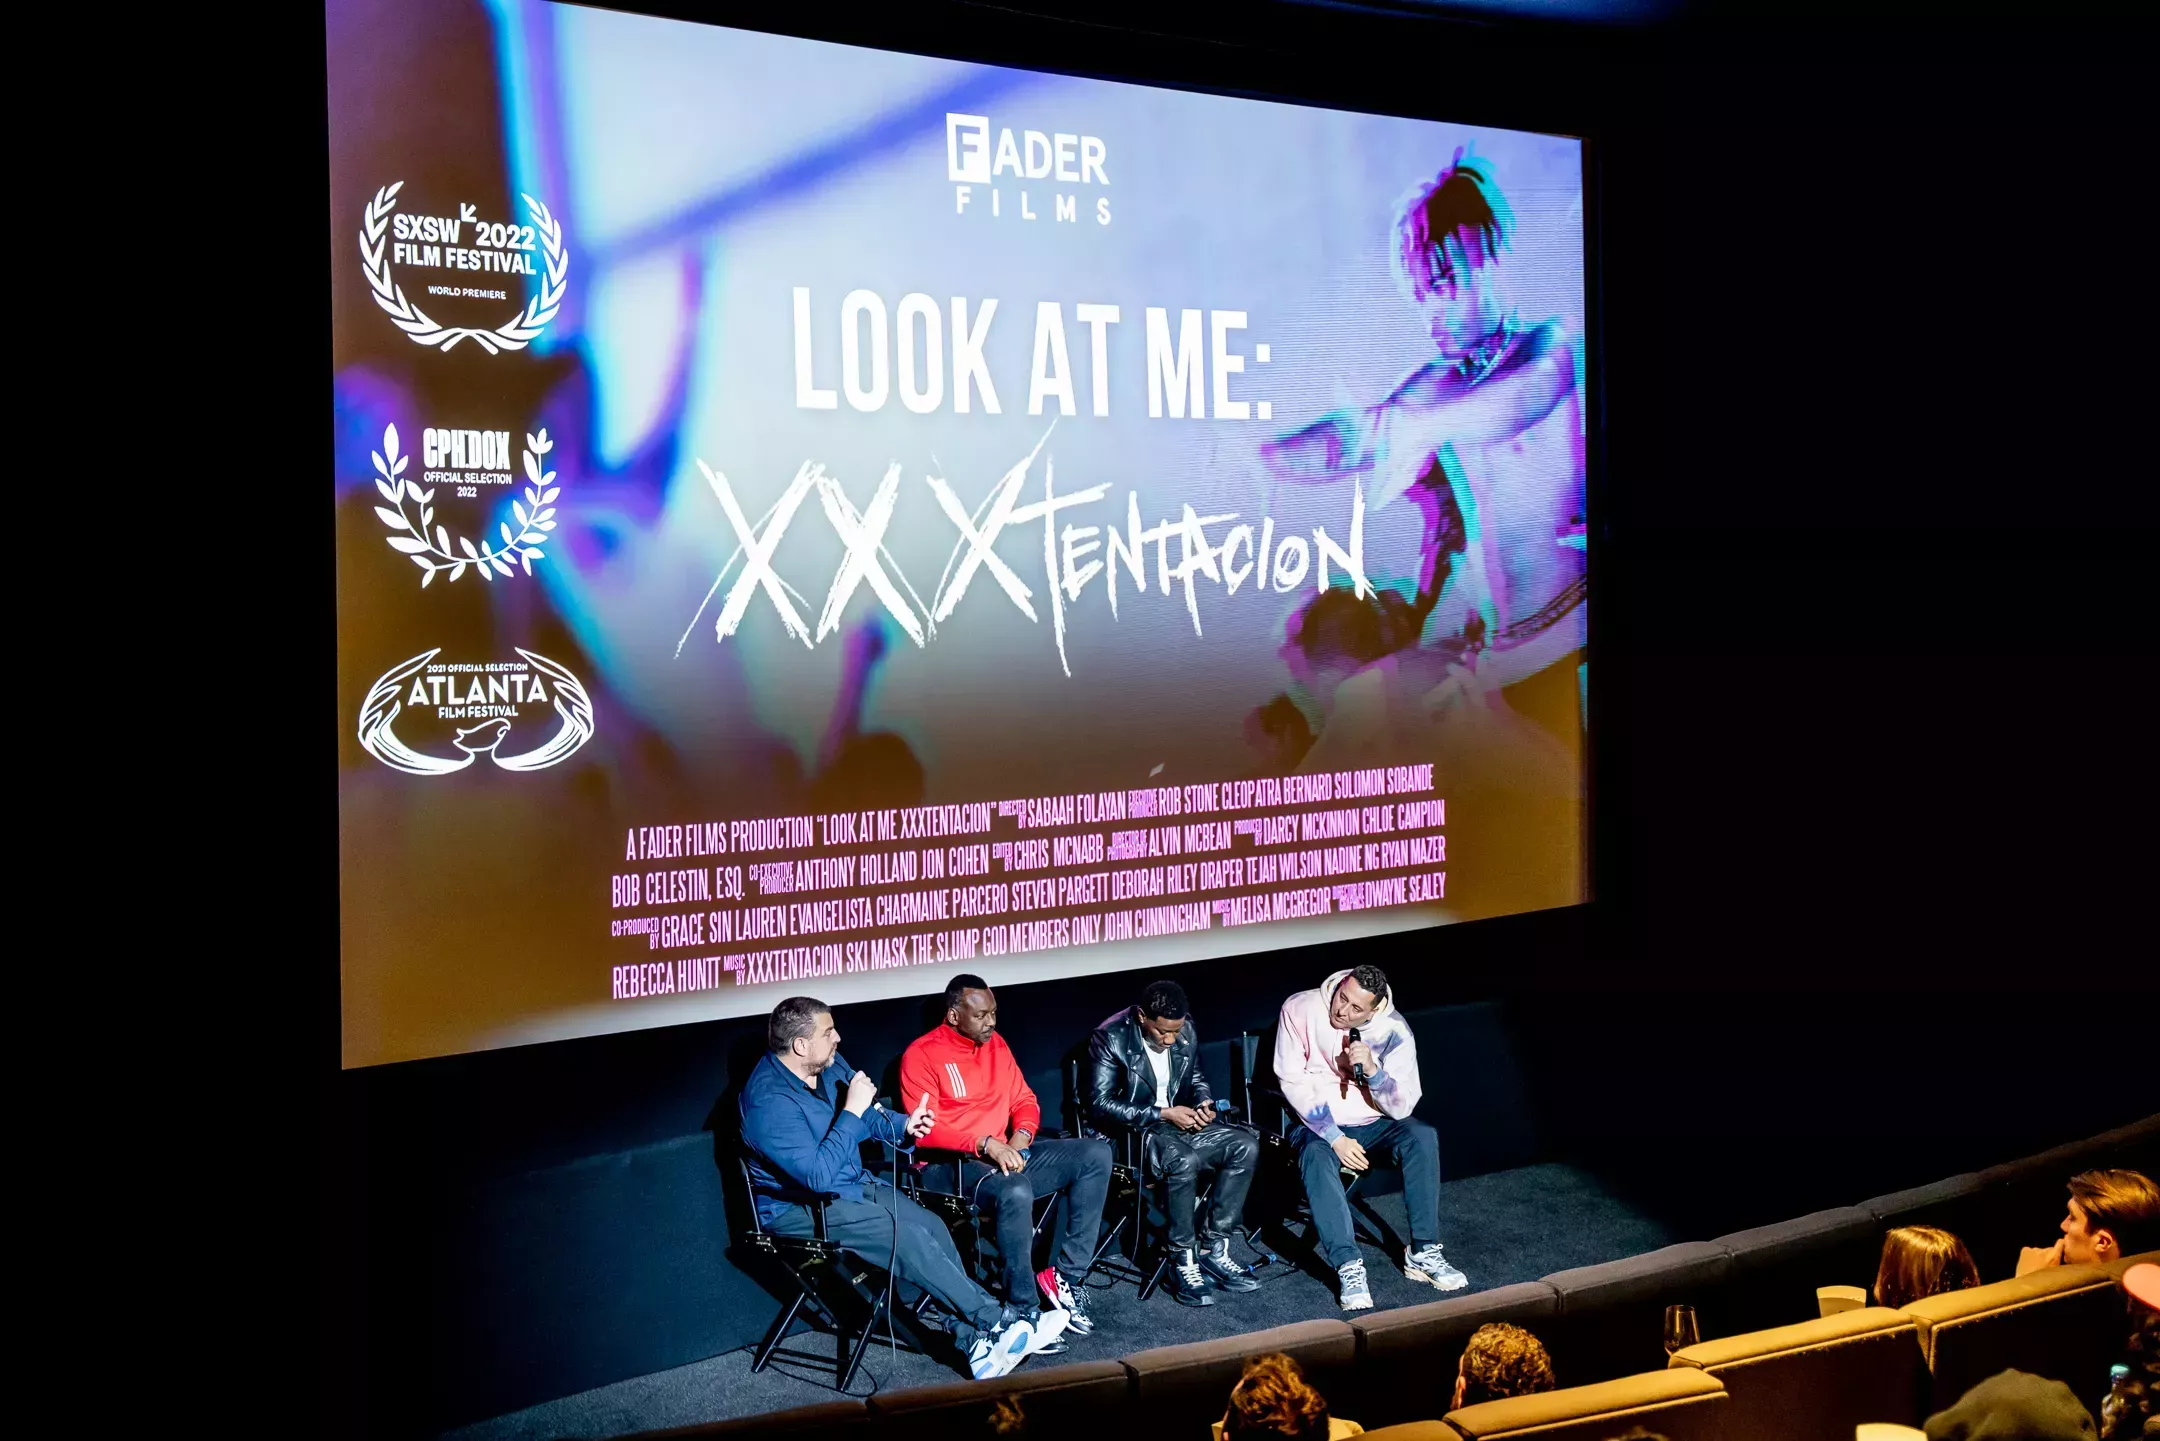 'Mírame: XXXTentacion': DJ Semtex organiza una sesión exclusiva de preguntas y respuestas en una proyección especial de la película en Londres